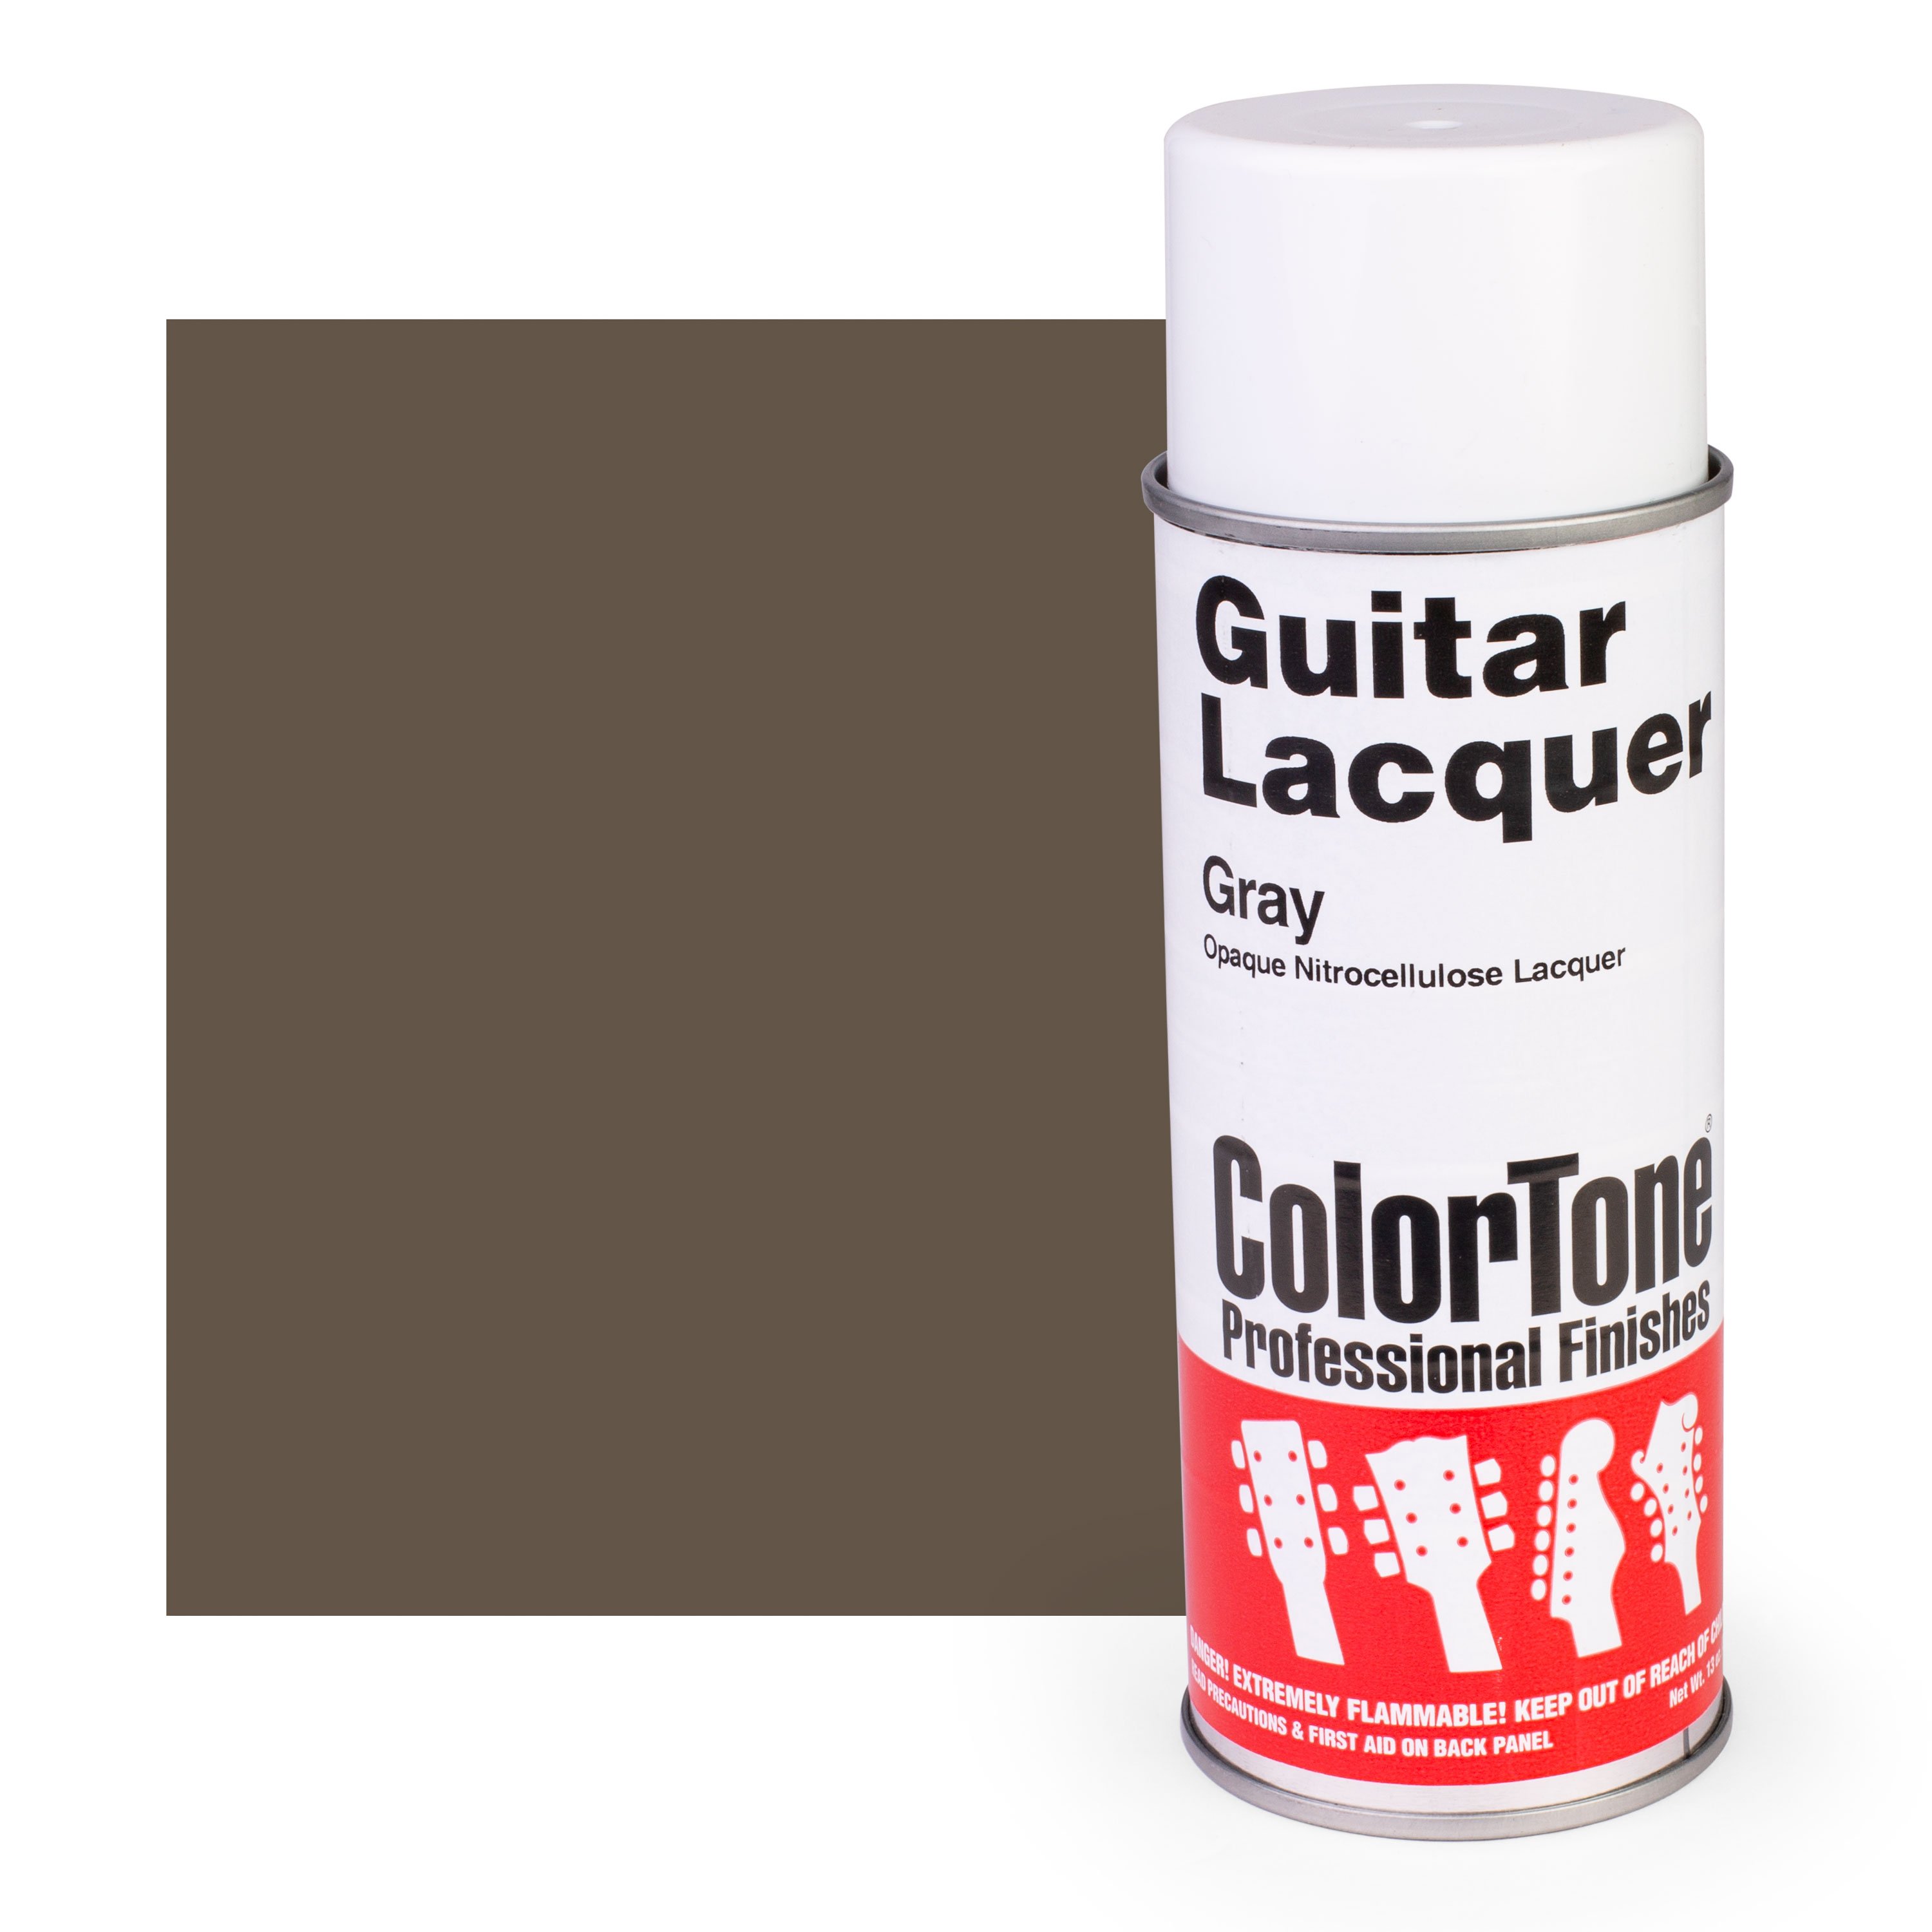 ColorTone Gray Aerosol Guitar Lacquer